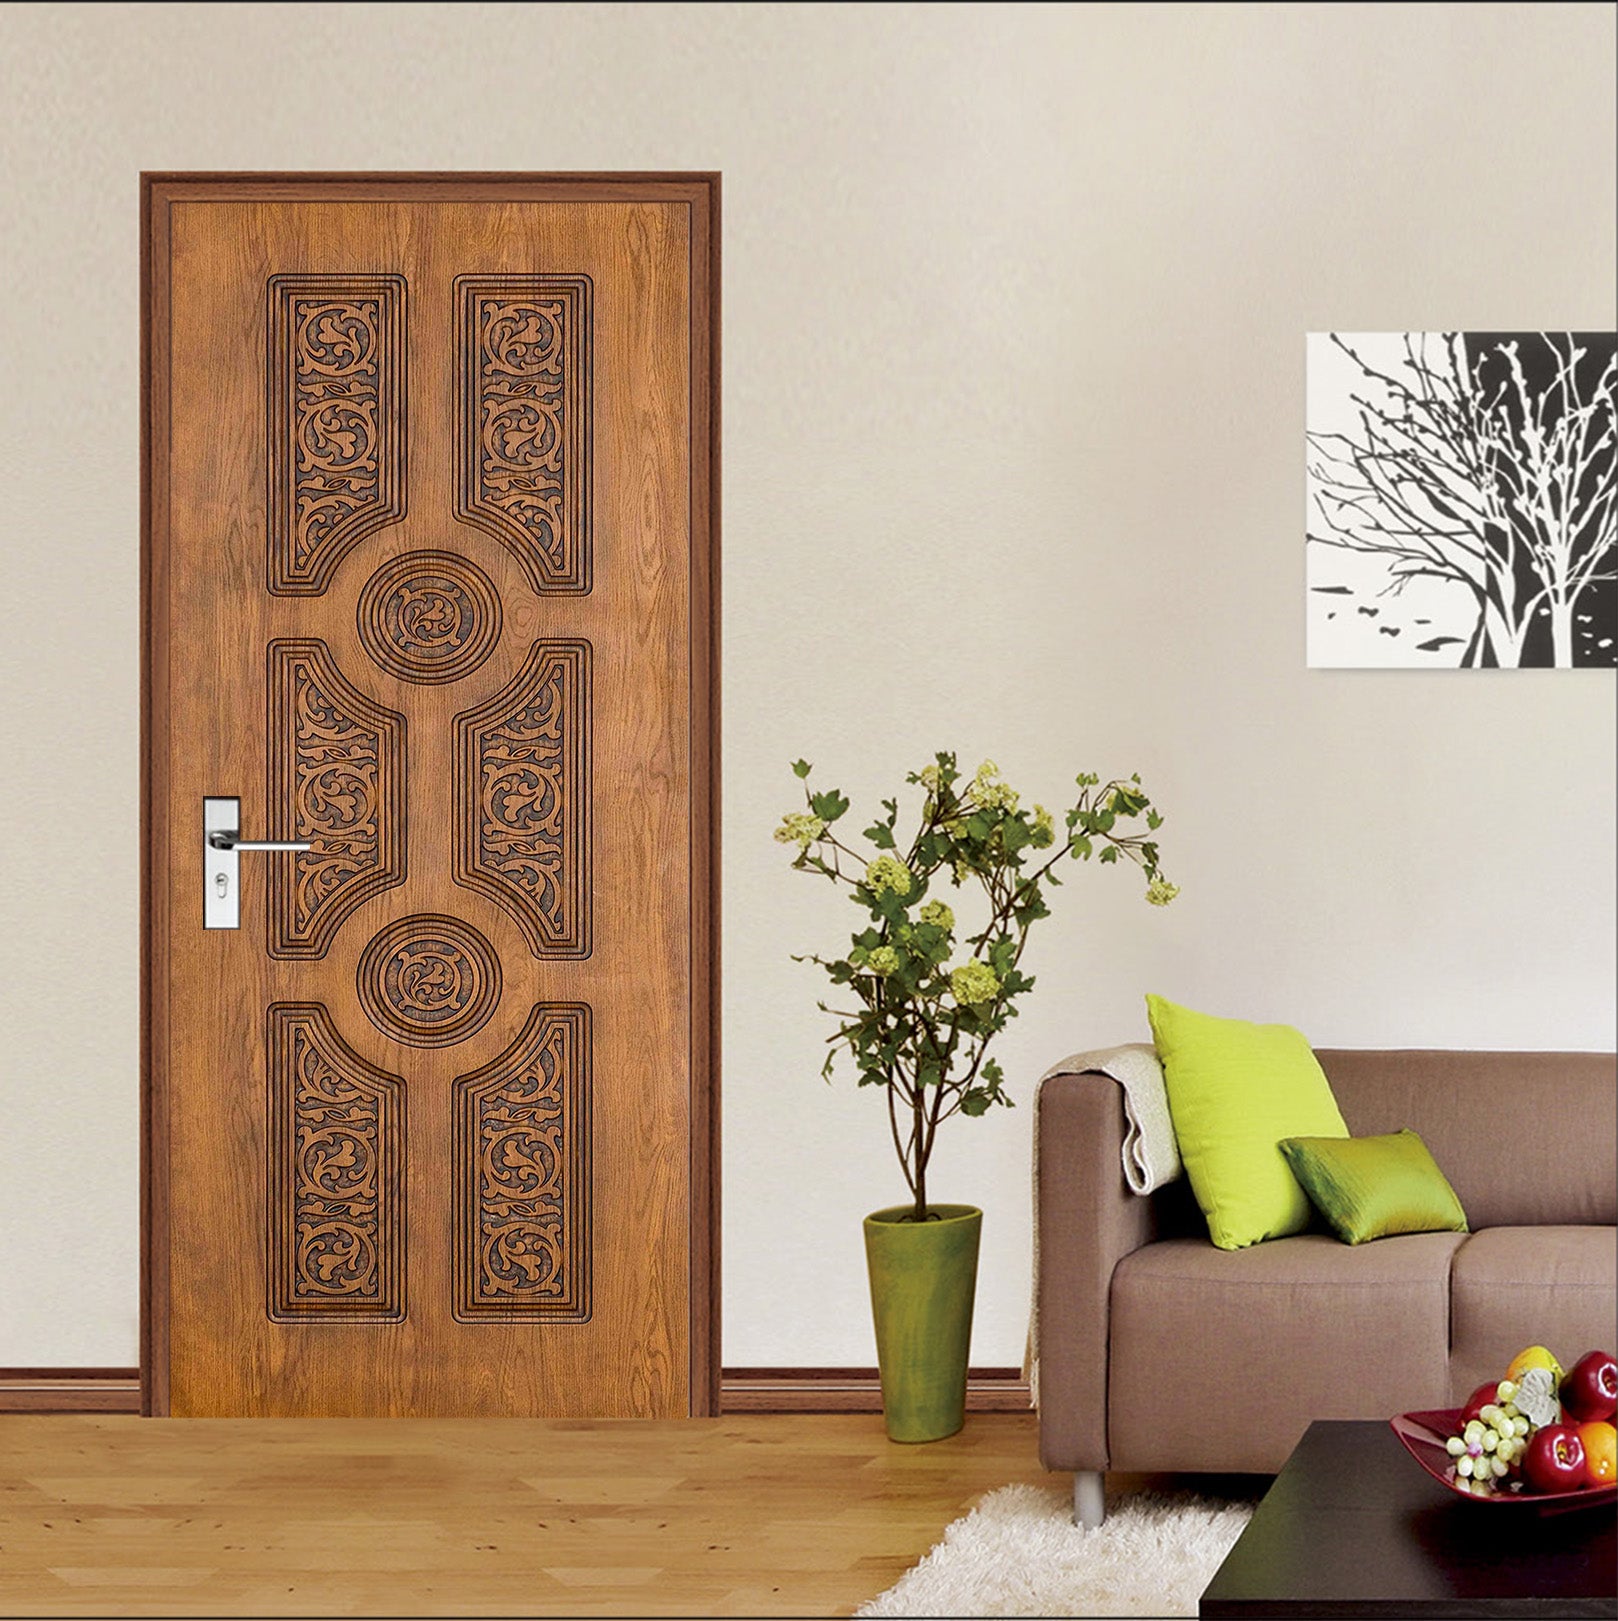 3D Wood Circular Pattern 014 Door Mural